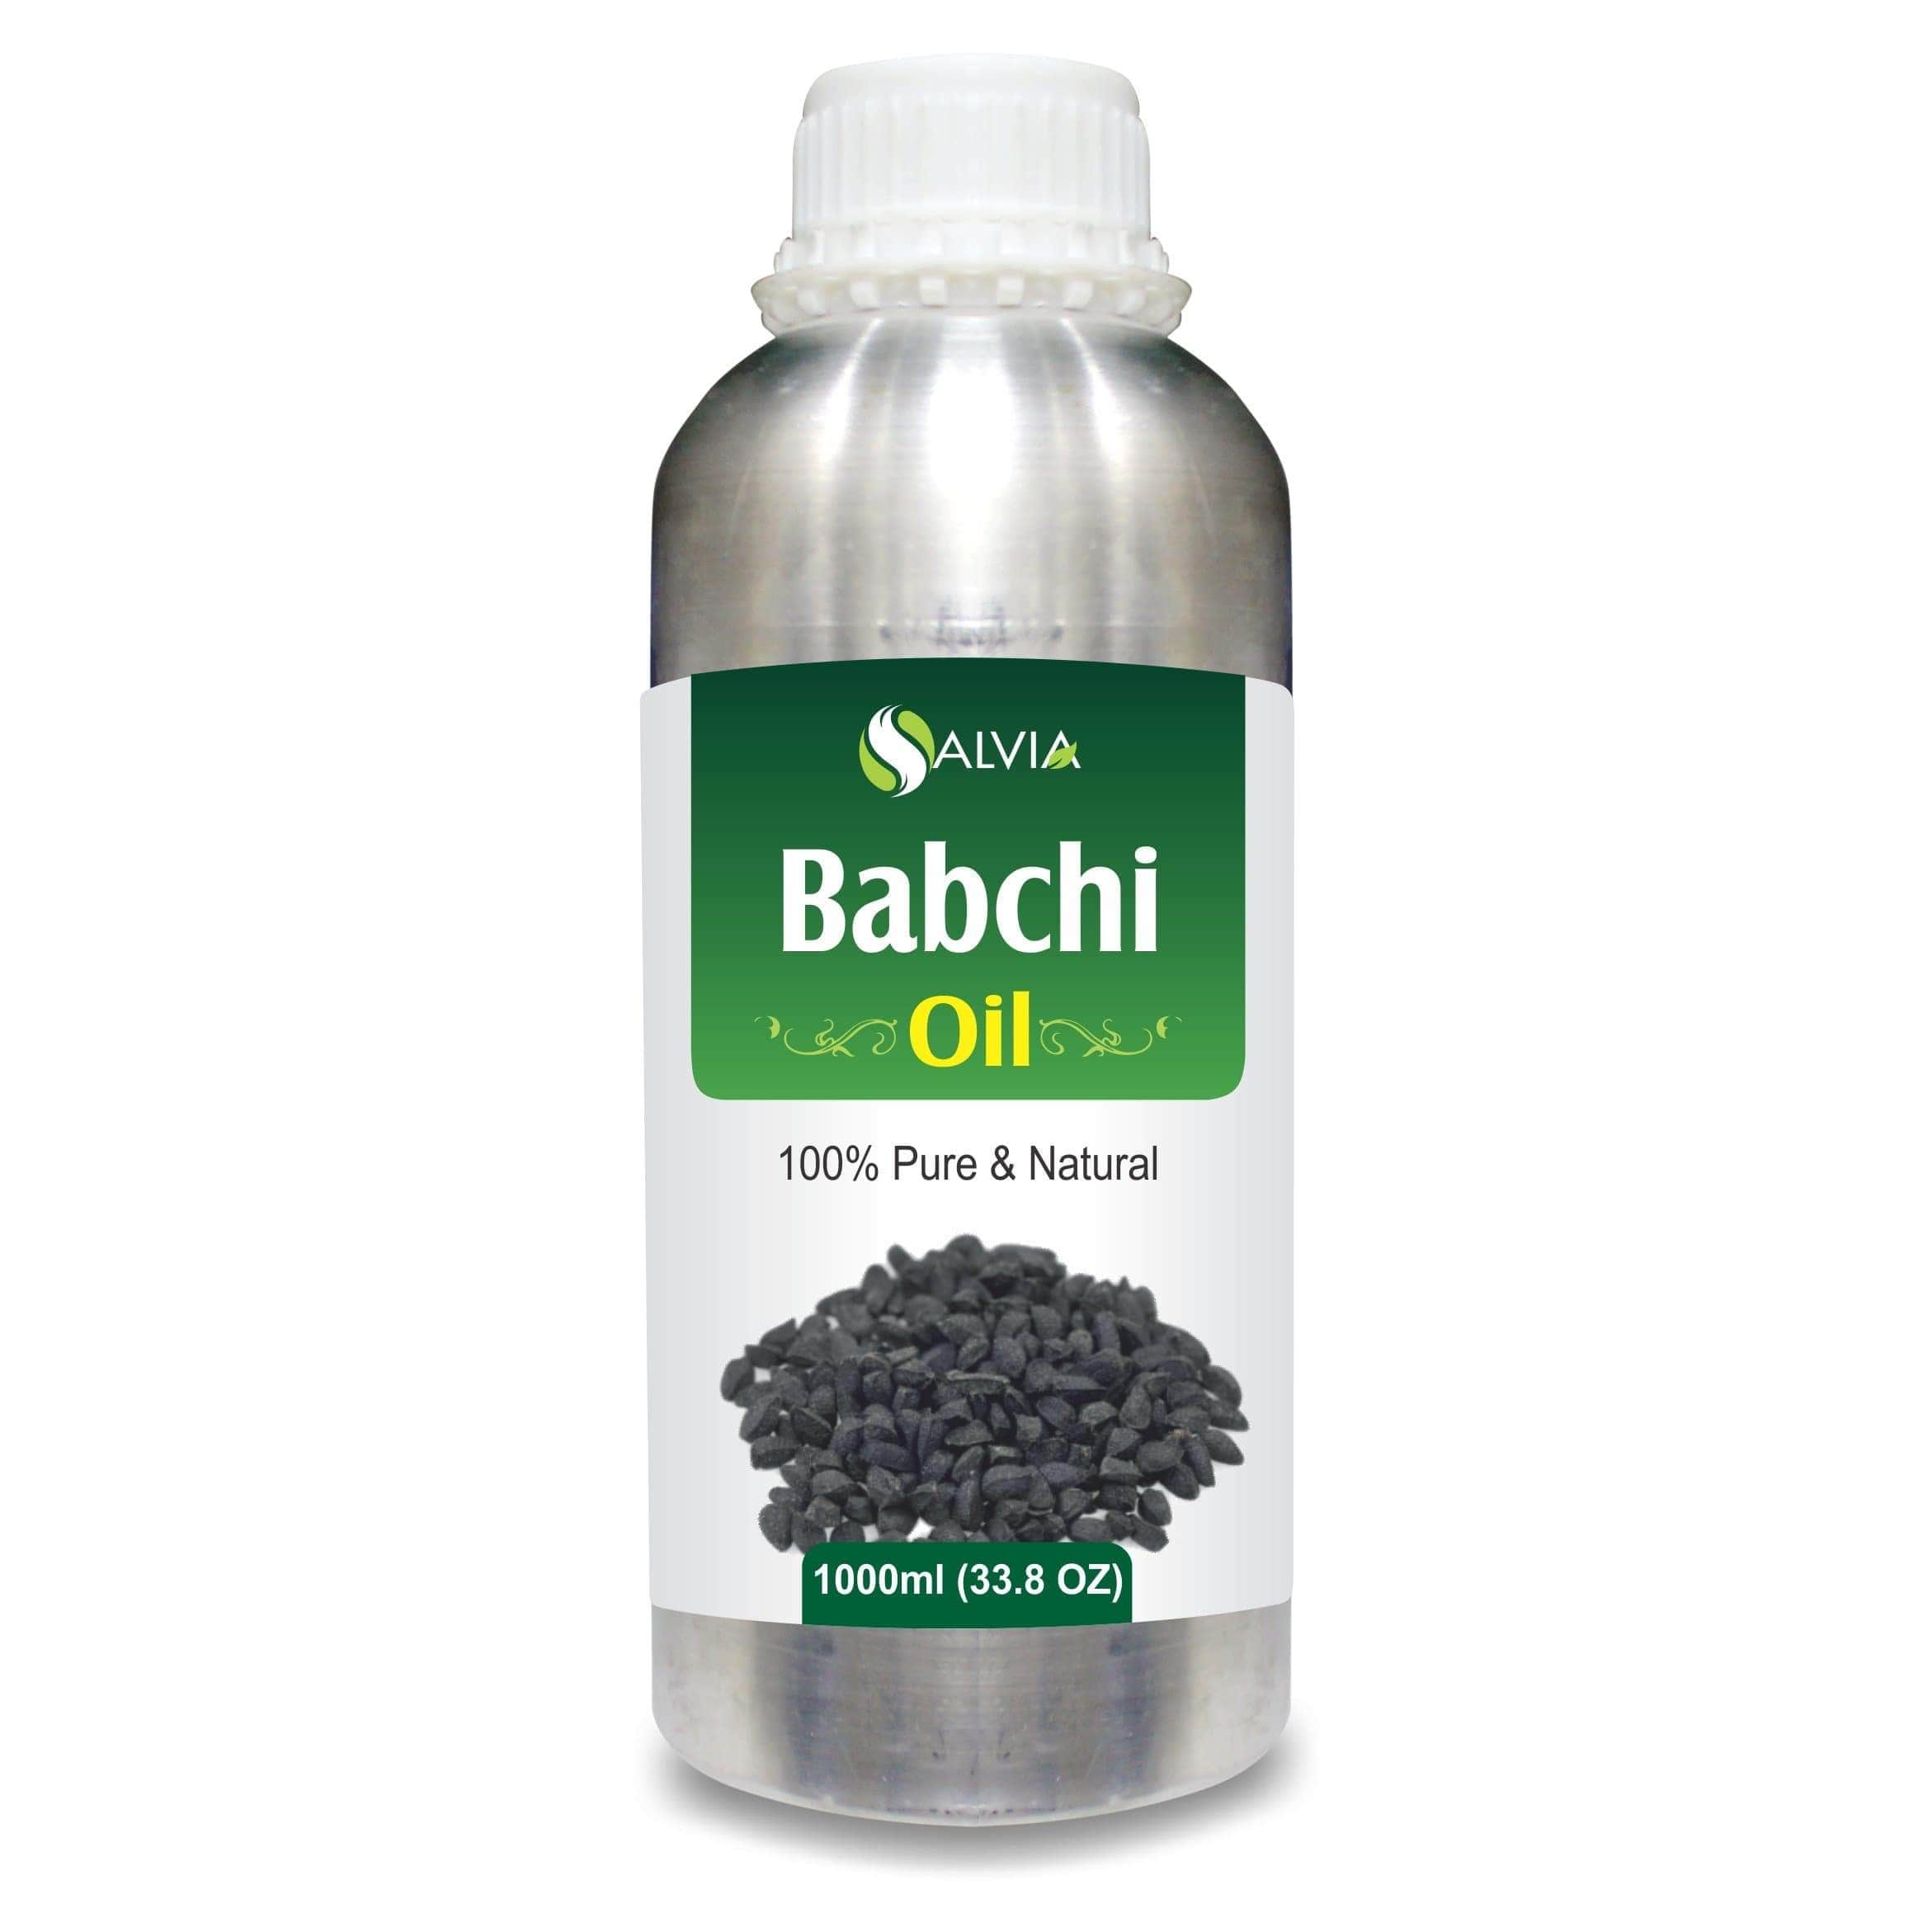 babchi oil for white hair